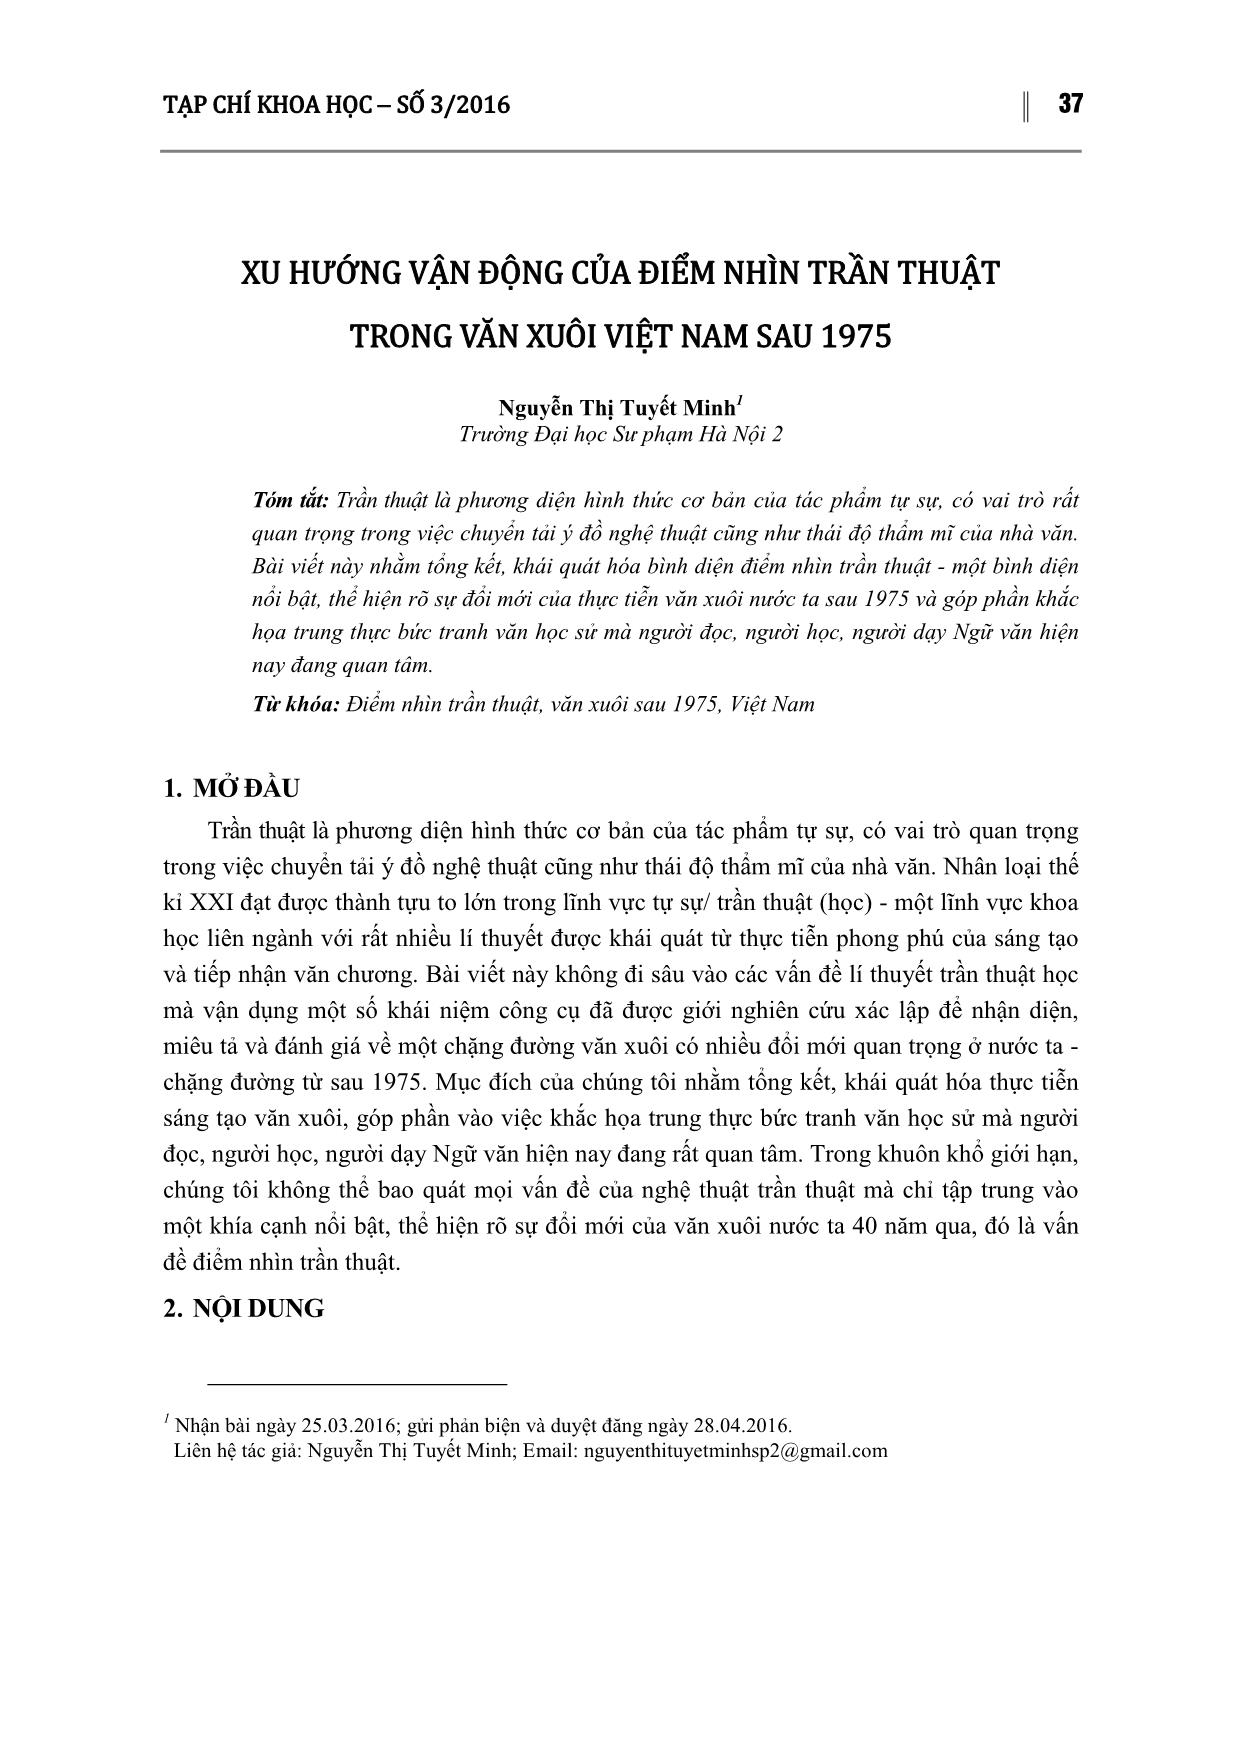 Xu hướng vận động của điểm nhìn trần thuật trong văn xuôi Việt Nam sau 1975 trang 1